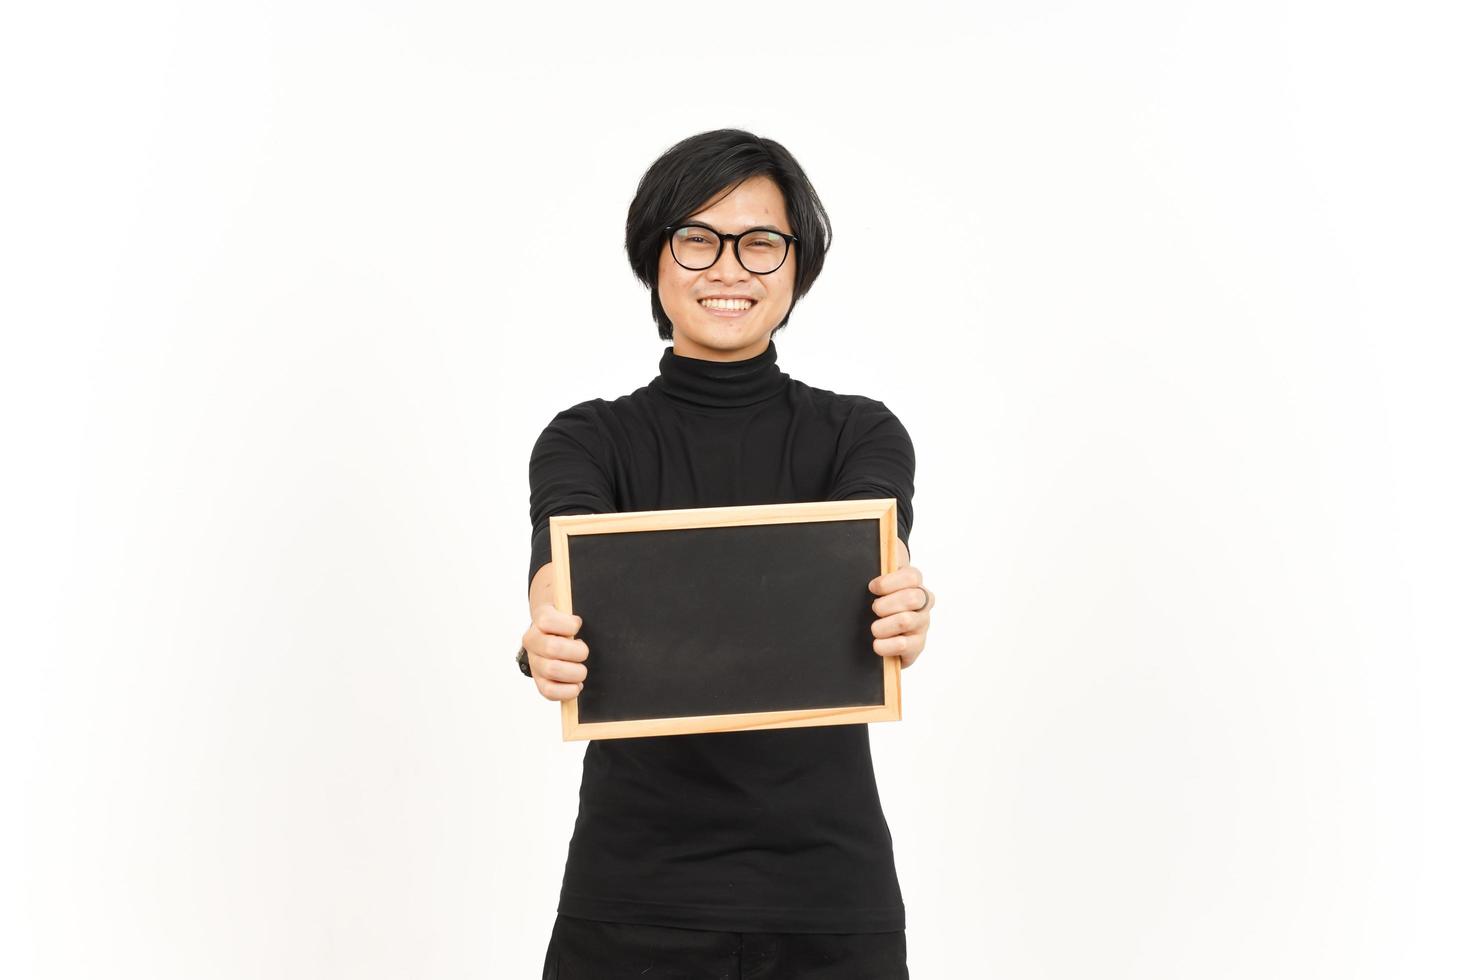 zeigen, präsentieren und halten leer Tafel von gut aussehend asiatisch Mann isoliert auf Weiß Hintergrund foto